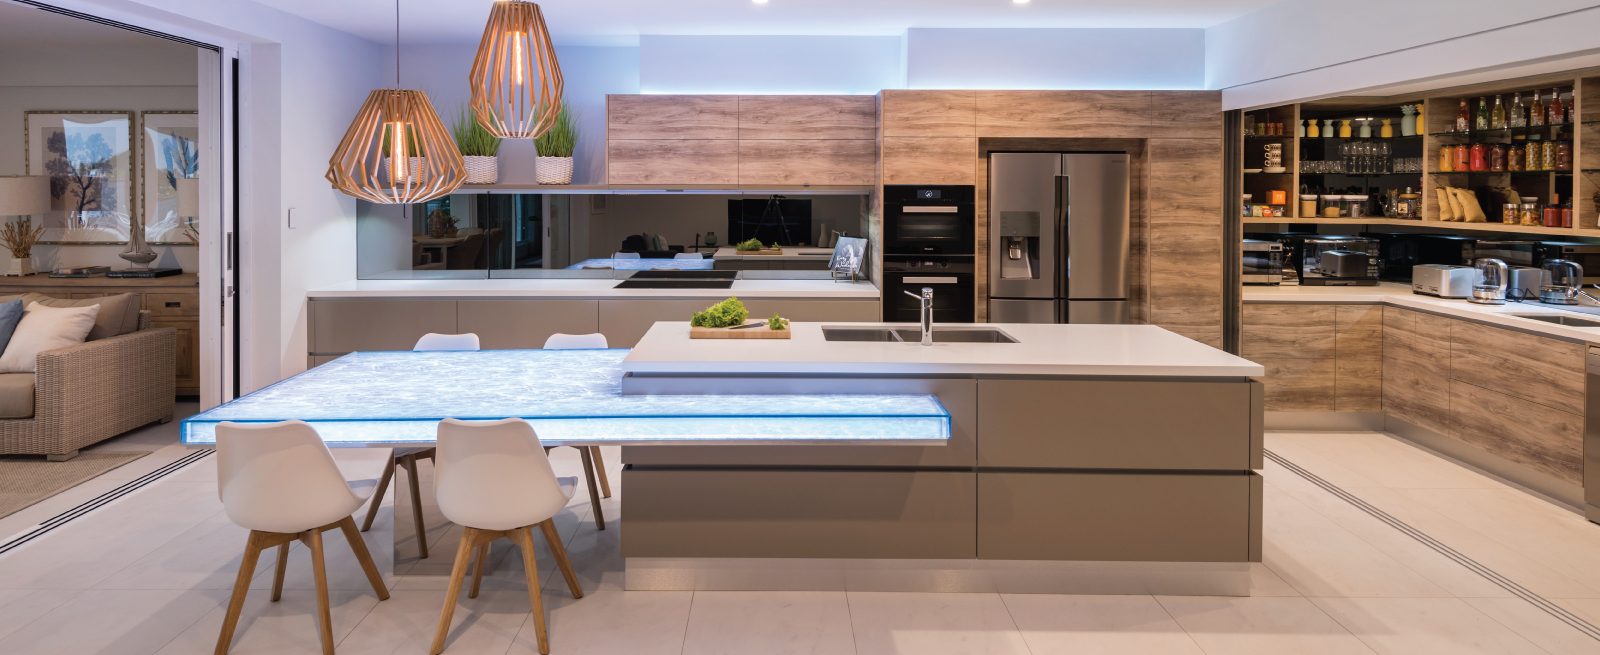 Luxury Kitchen Design Brisbane Australia